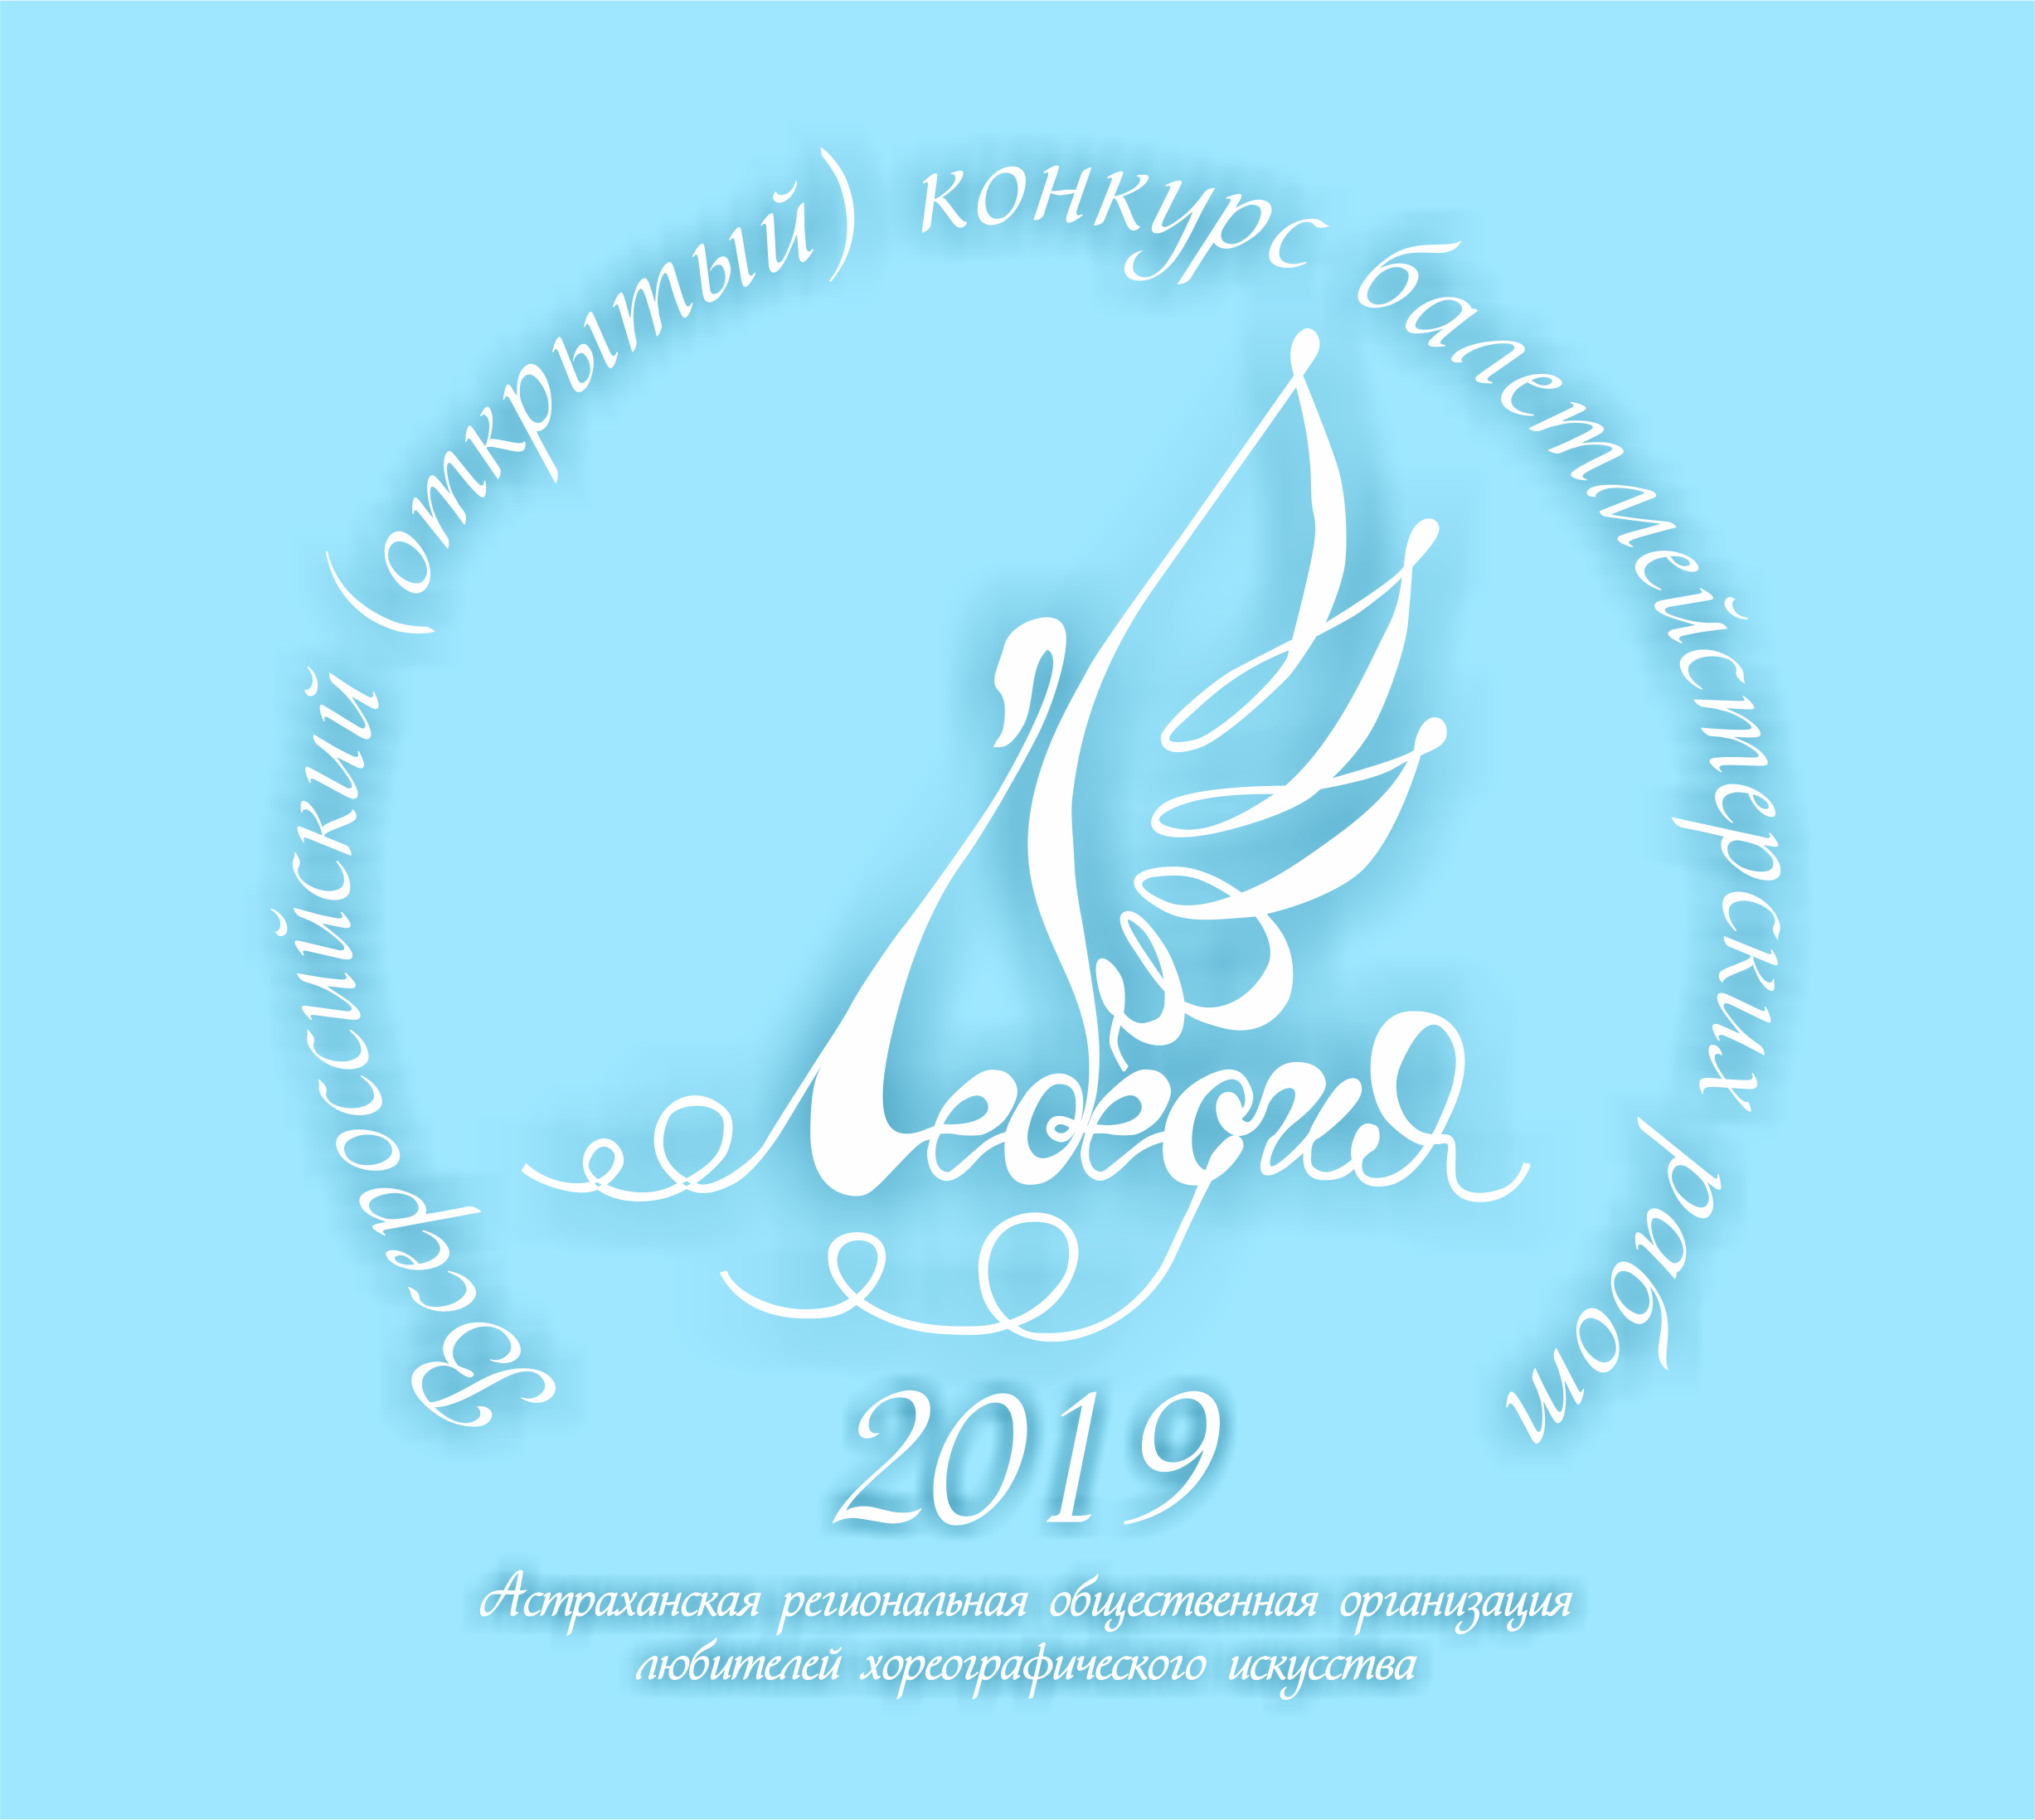 В Астрахани состоится межрегиональный конкурс балетмейстерских работ «Лебедия-2019»